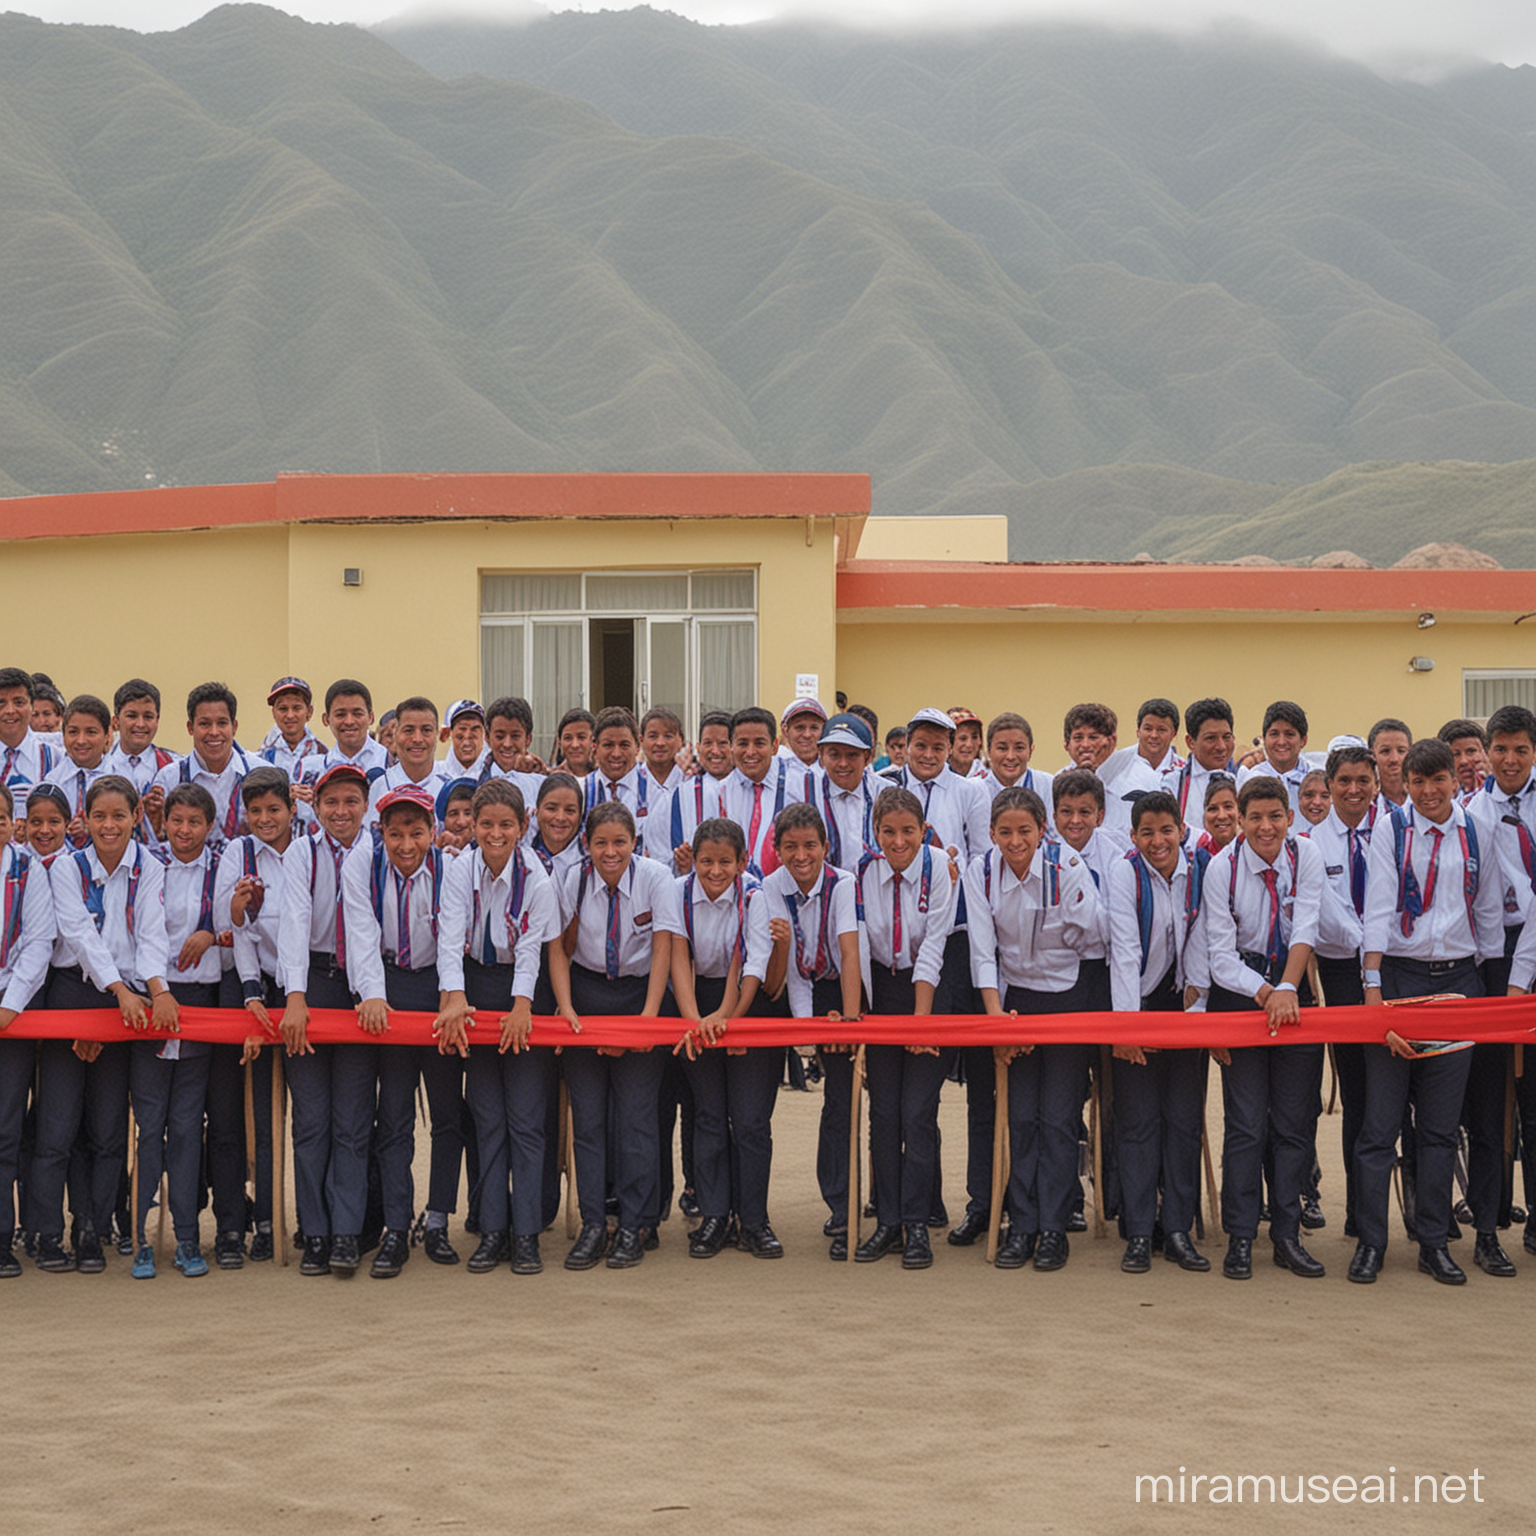 Inauguration Ceremony of a Vibrant Peruvian School